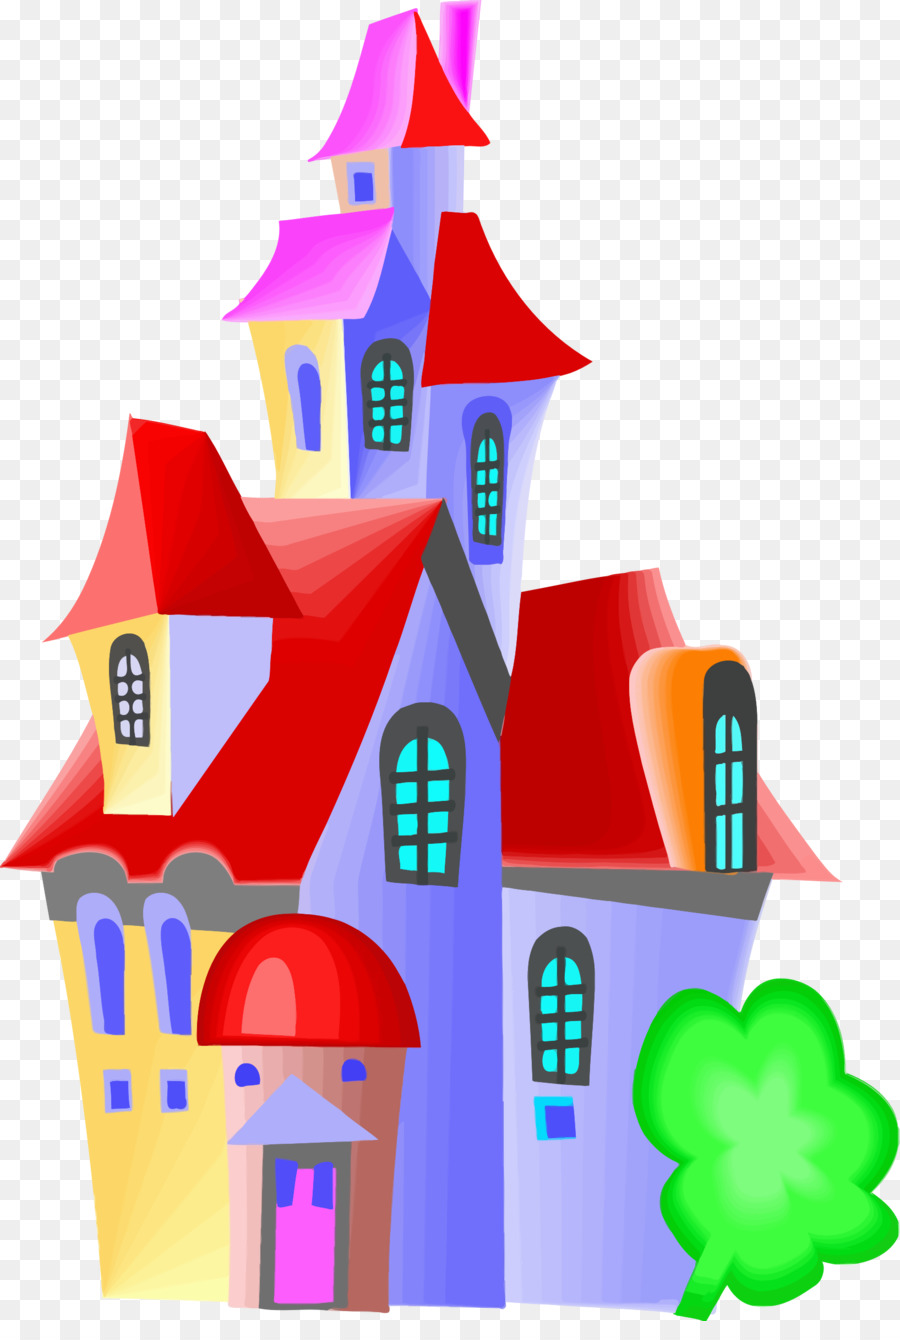 Castle Clip art - fairy tale castle png download - 1635*2400 - Free Transparent Castle png Download.